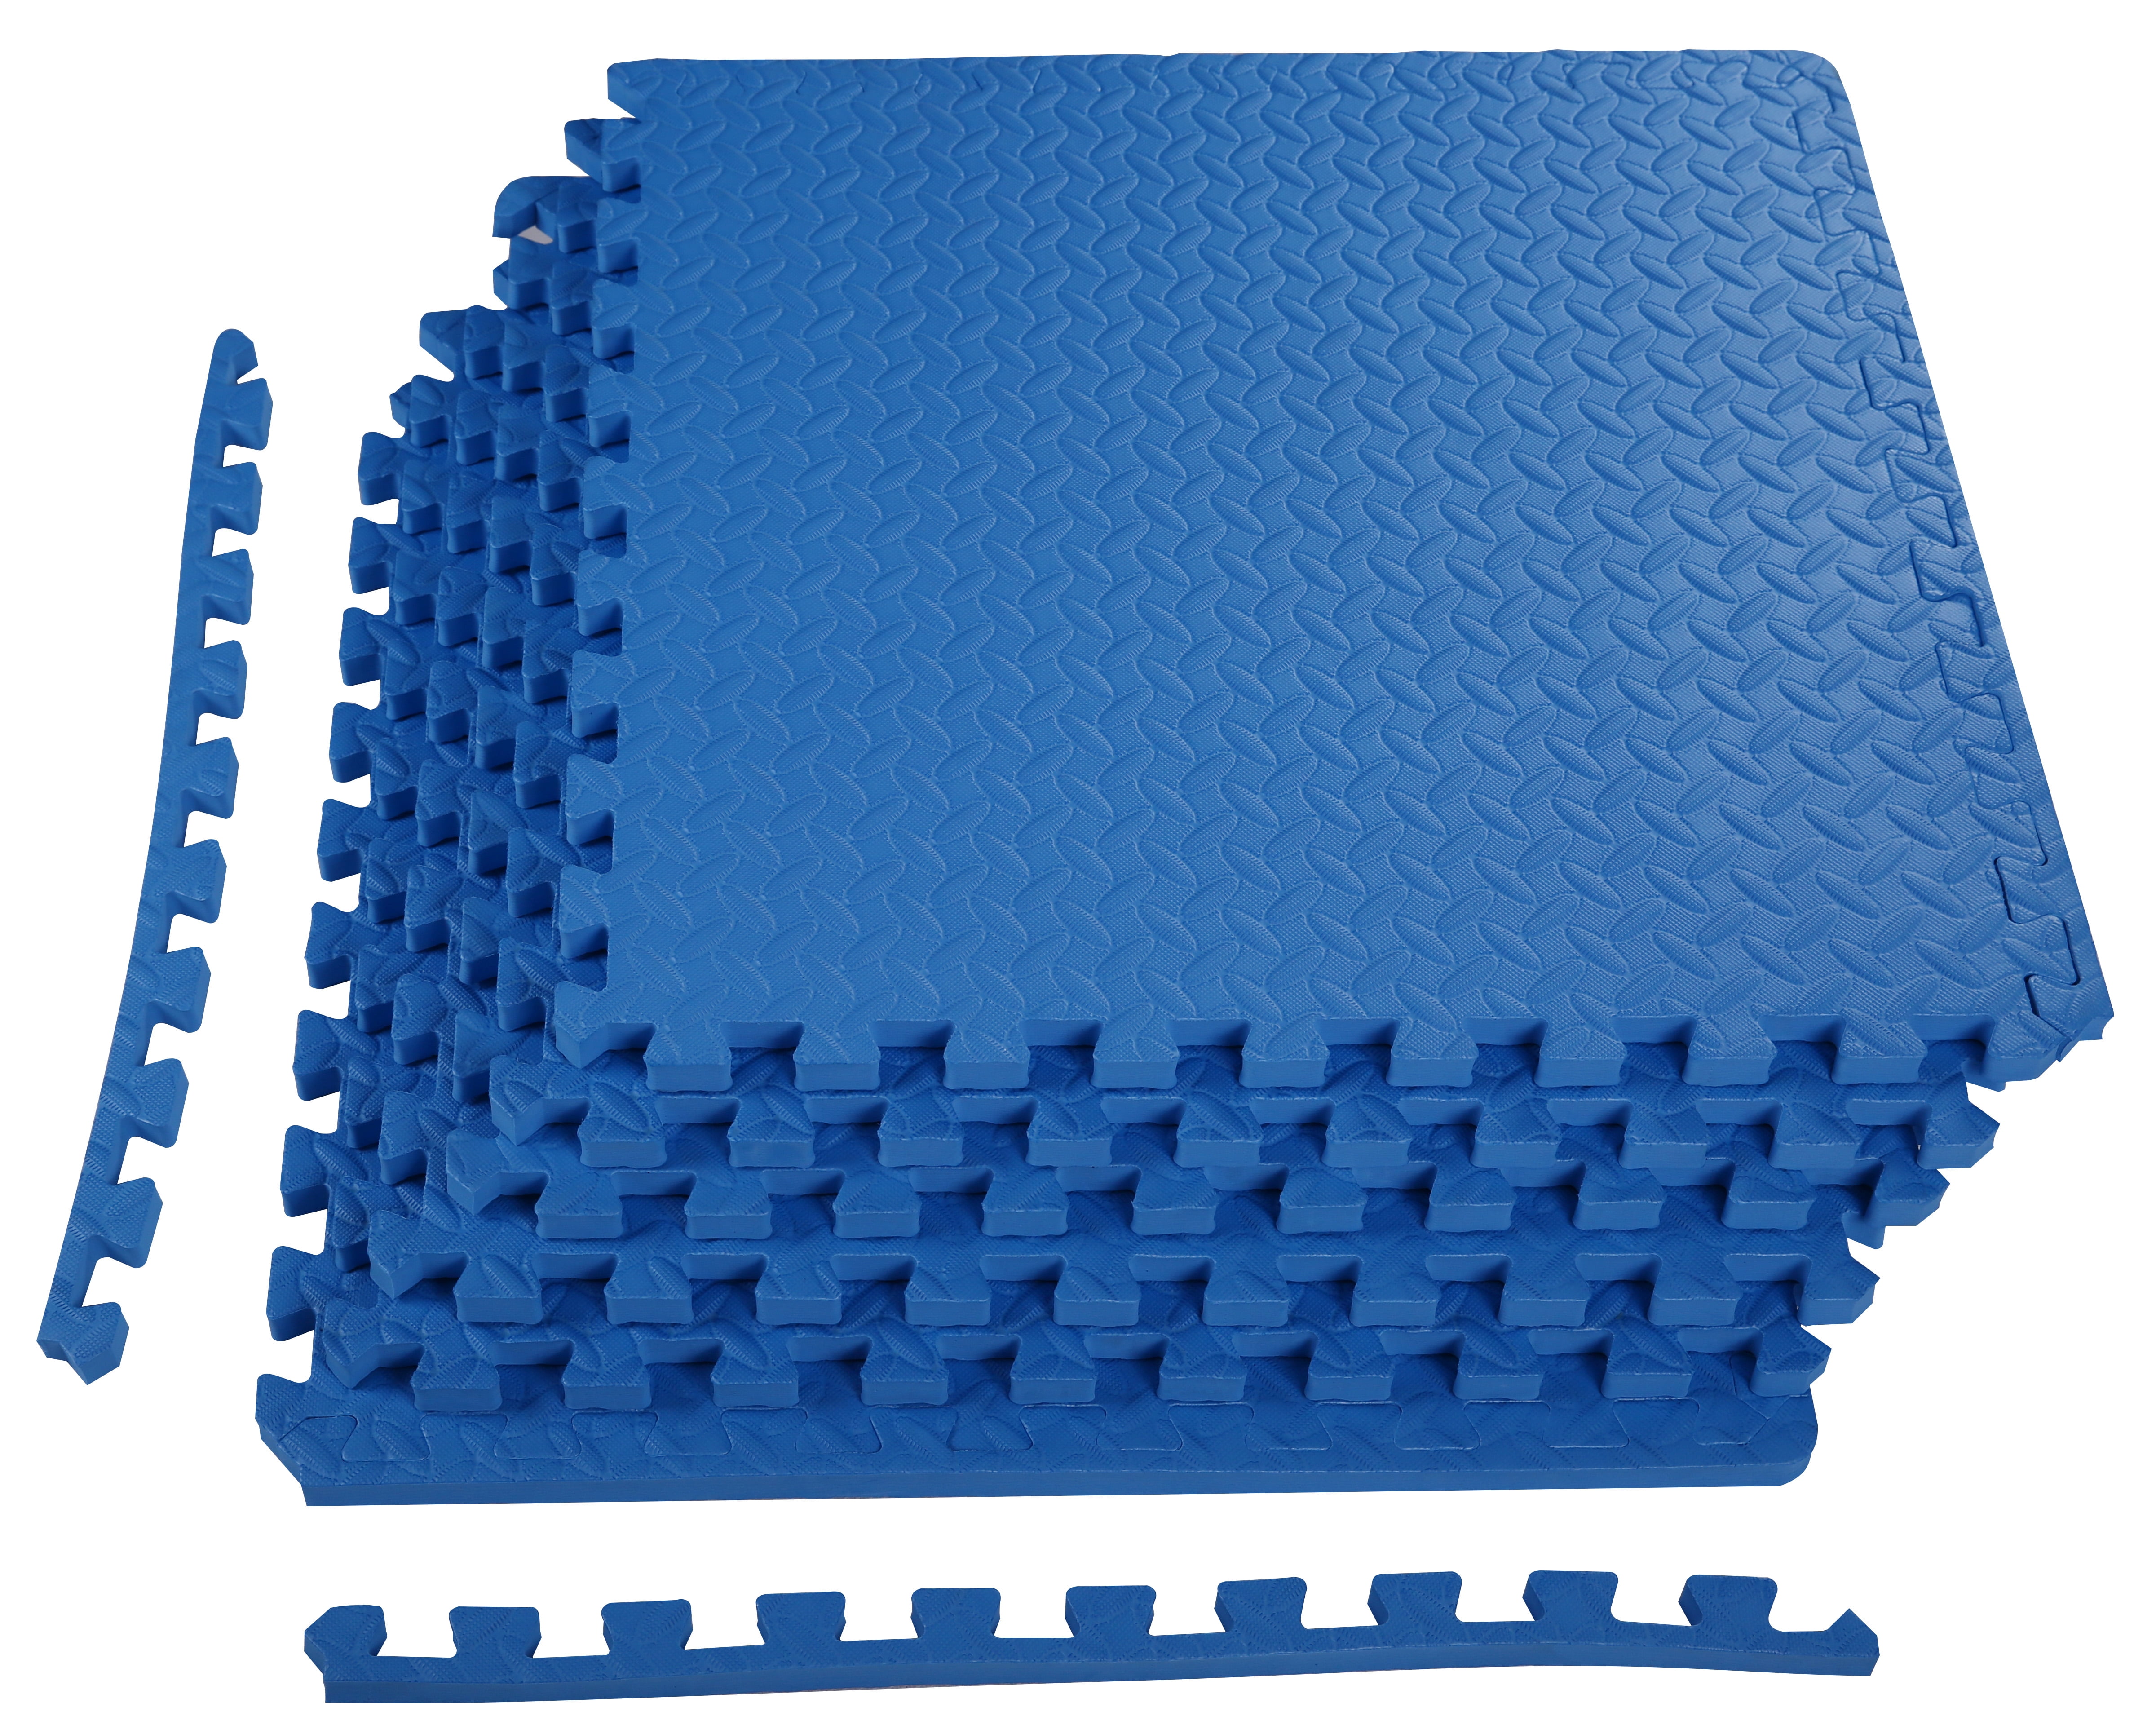 72 sqft purple interlocking foam floor puzzle tiles mat puzzle mat flooring 